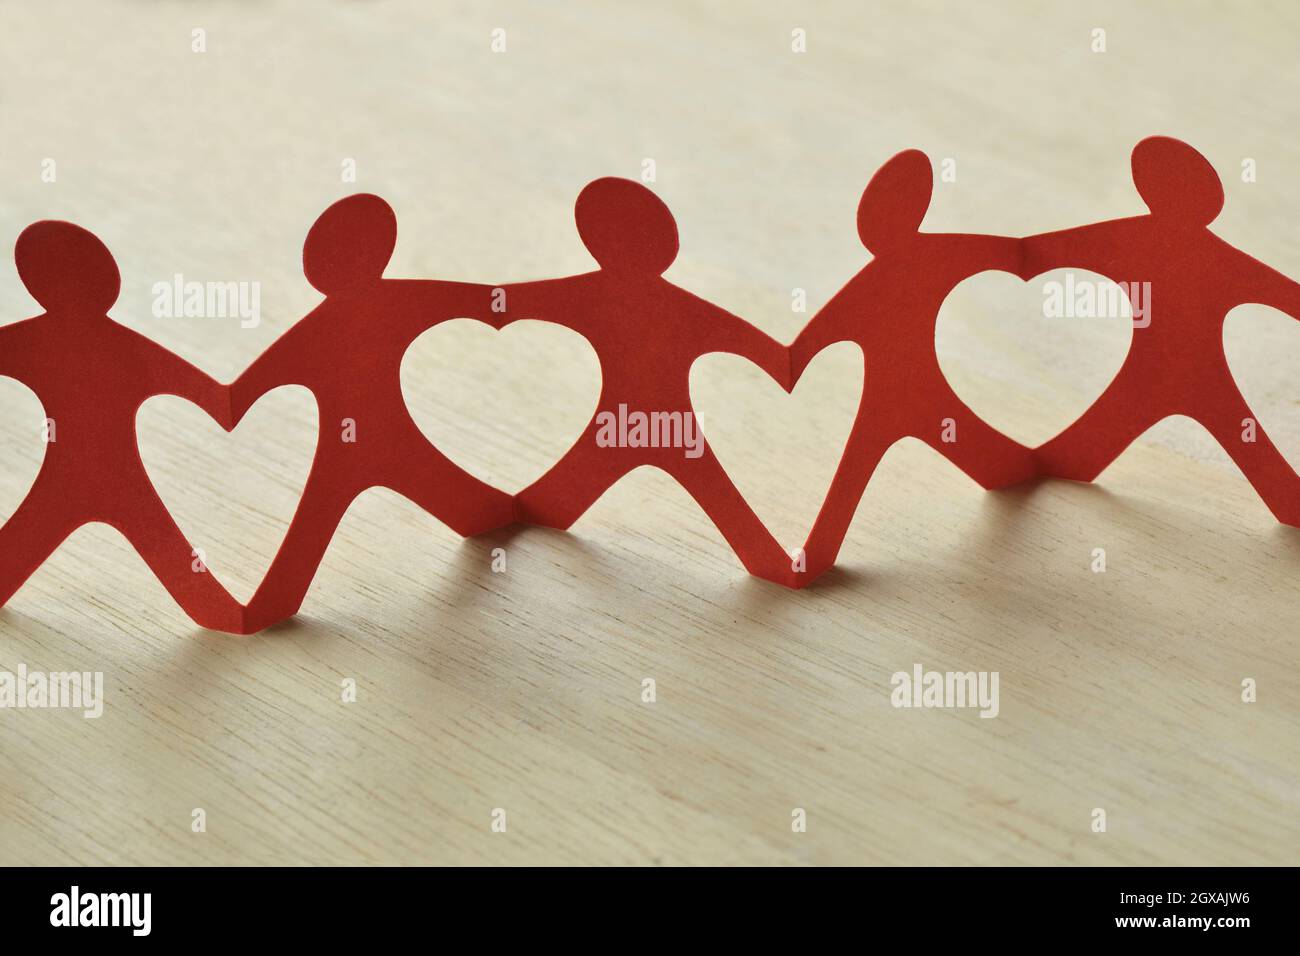 Papier Menschen Kette mit Herzen - Teamwork und Liebe Konzept Stockfoto